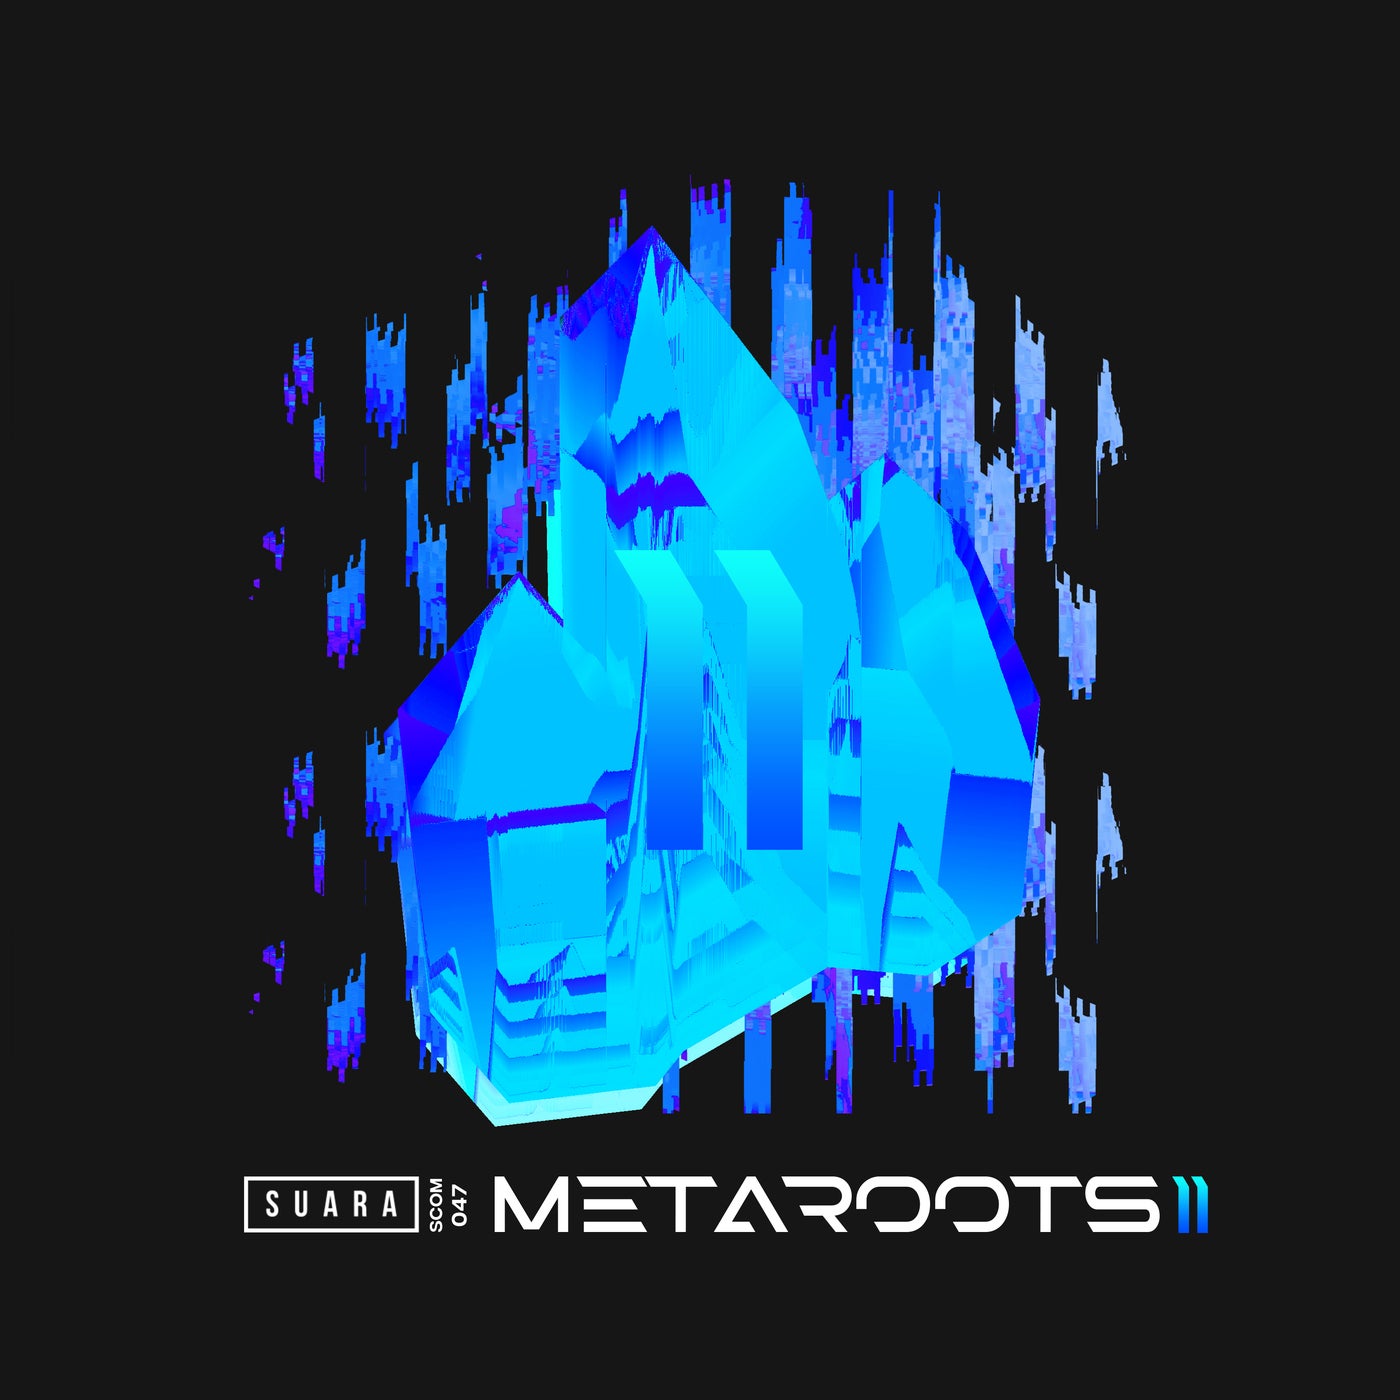 Metaroots 2